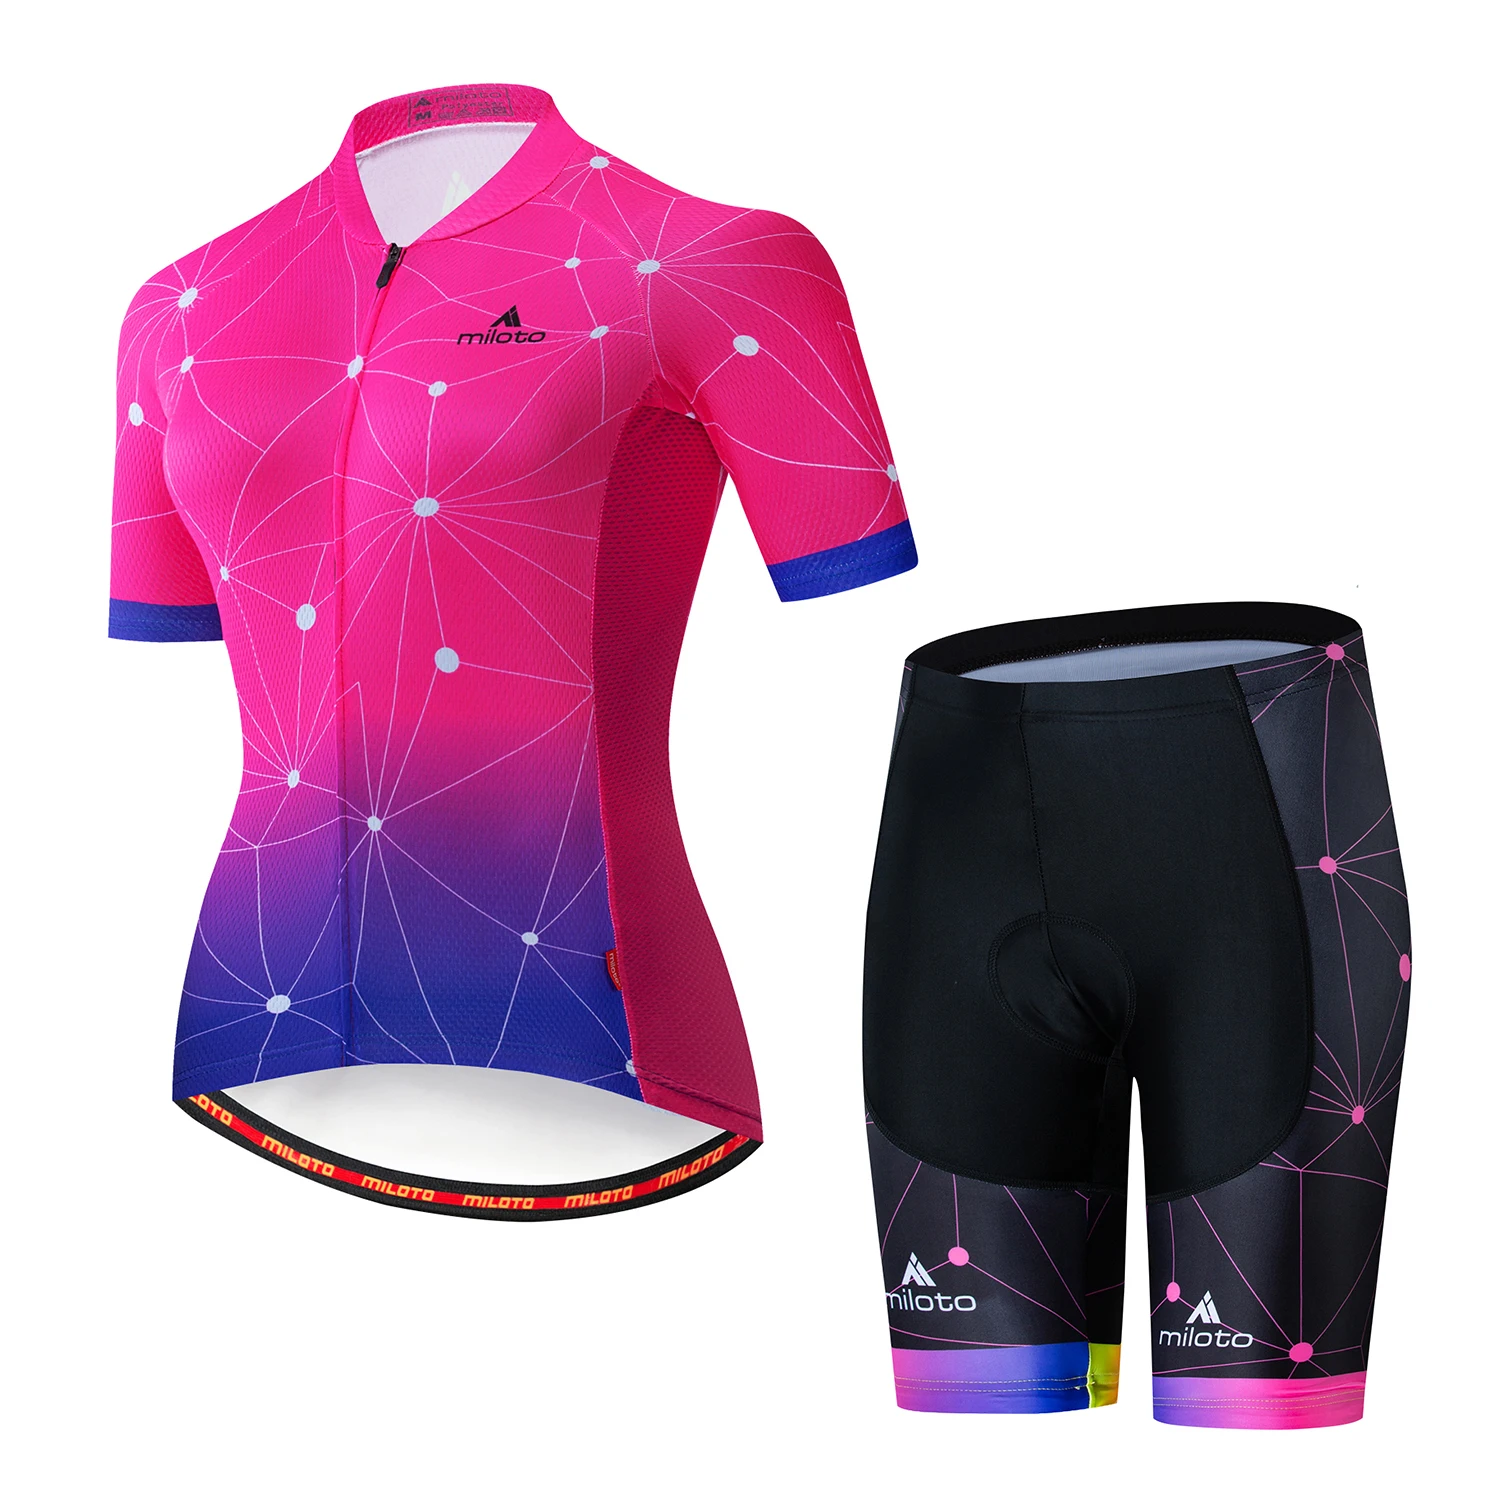 MILOTO, женские майки для велоспорта, летняя одежда для велоспорта, одежда для горного велосипеда, одежда для велоспорта, одежда для горного велосипеда, одежда для велоспорта, шорты